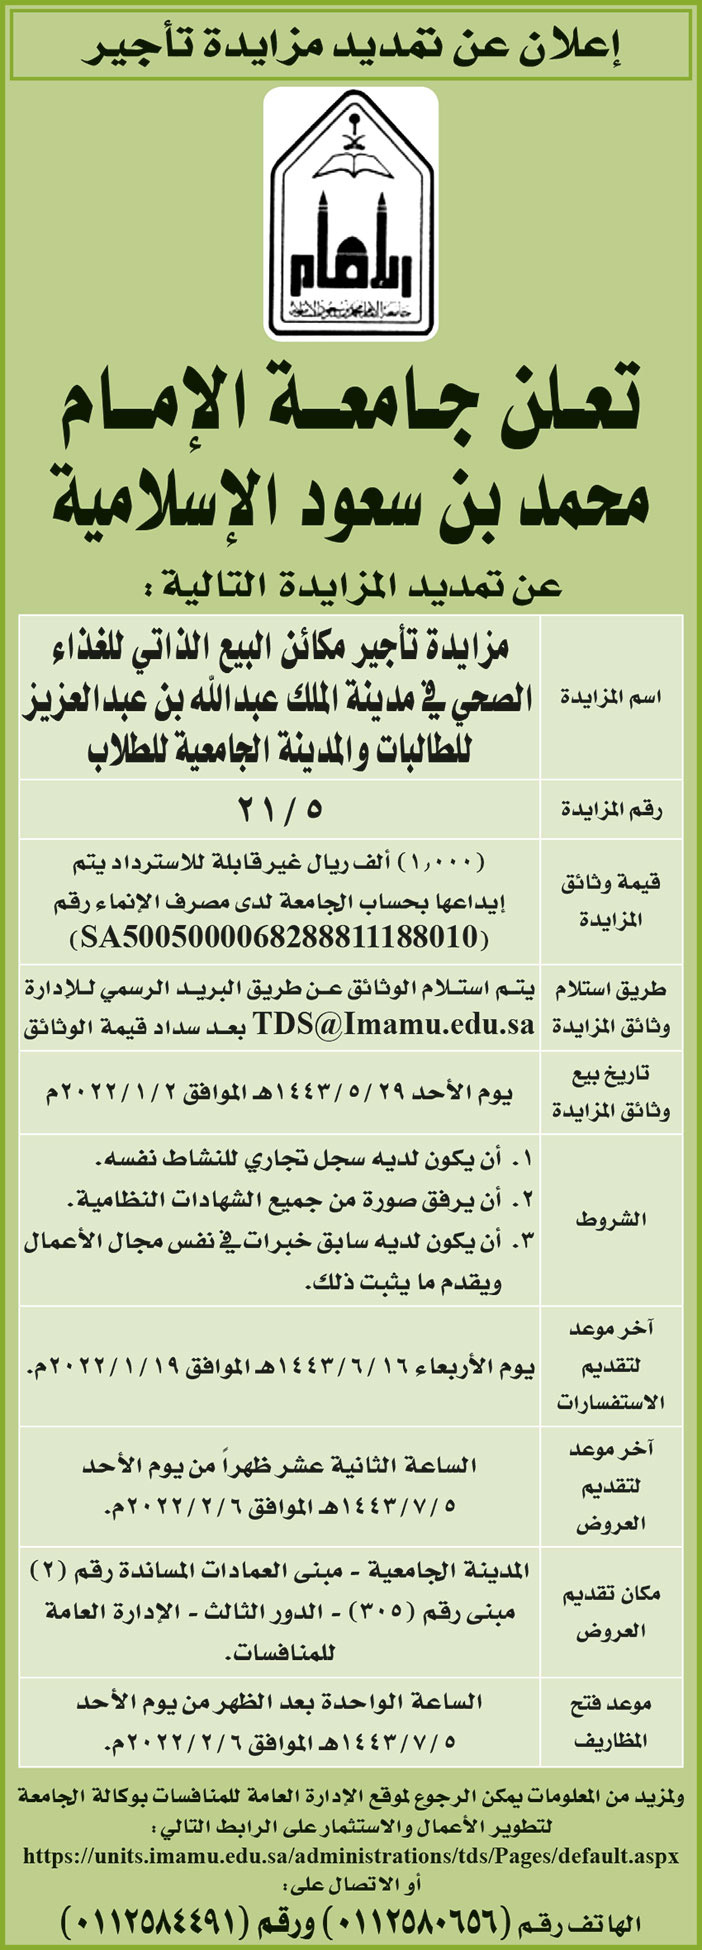 جامعة الإمام محمد بن سعود الإسلامية تمدد المزايدة لتأجير مكائن البيع الذاتي للغذاء الصحي في مدينة الملك عبدالله بن عبدالعزيز للطالبات والمدينة الجامعية للطلاب 